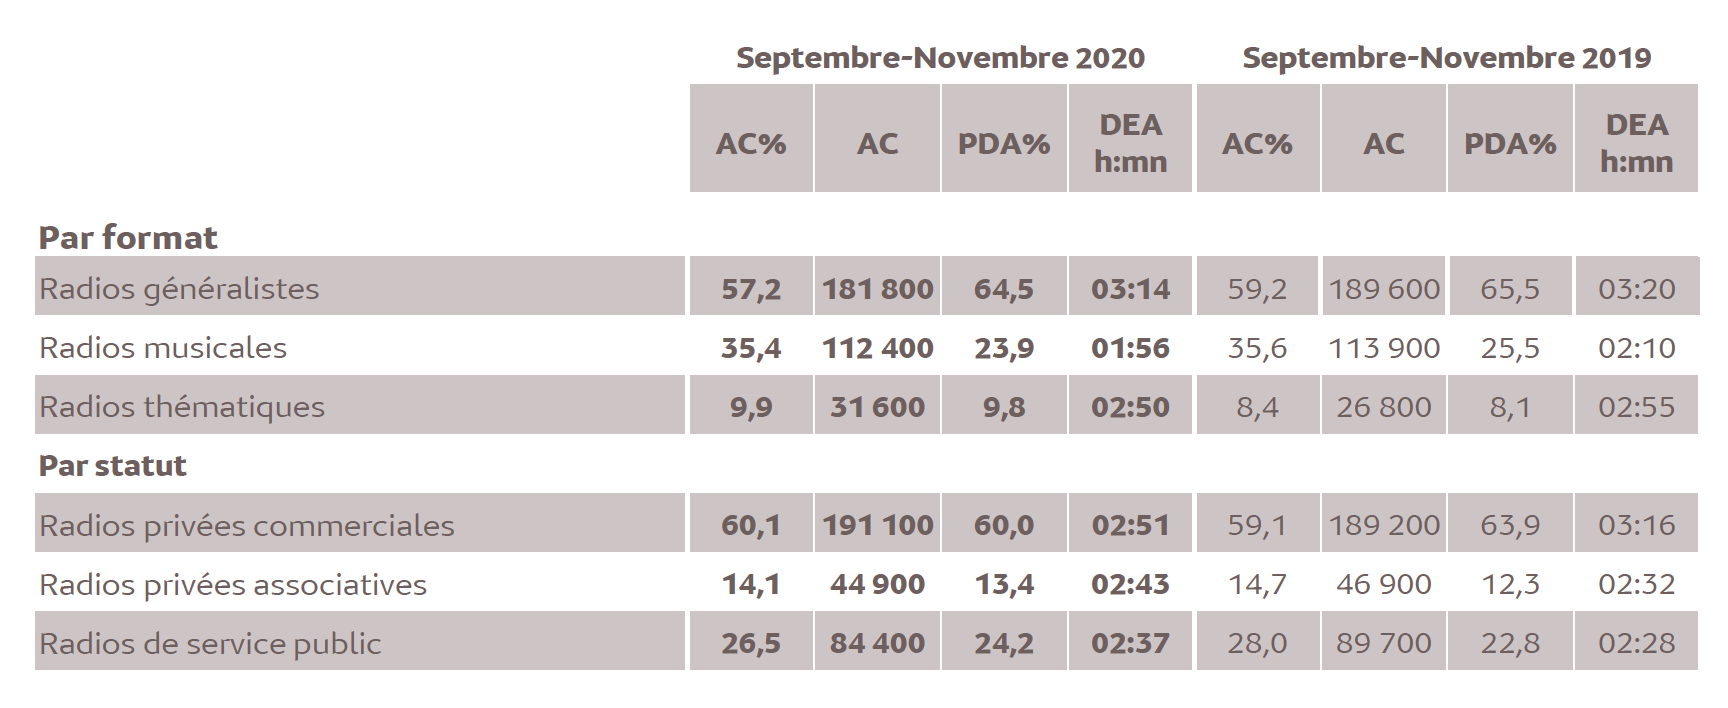 Source : Médiamétrie -Métridom -Septembre-Novembre 2020 -13 ans et plus -Copyright Médiamétrie -Tous droits réservés